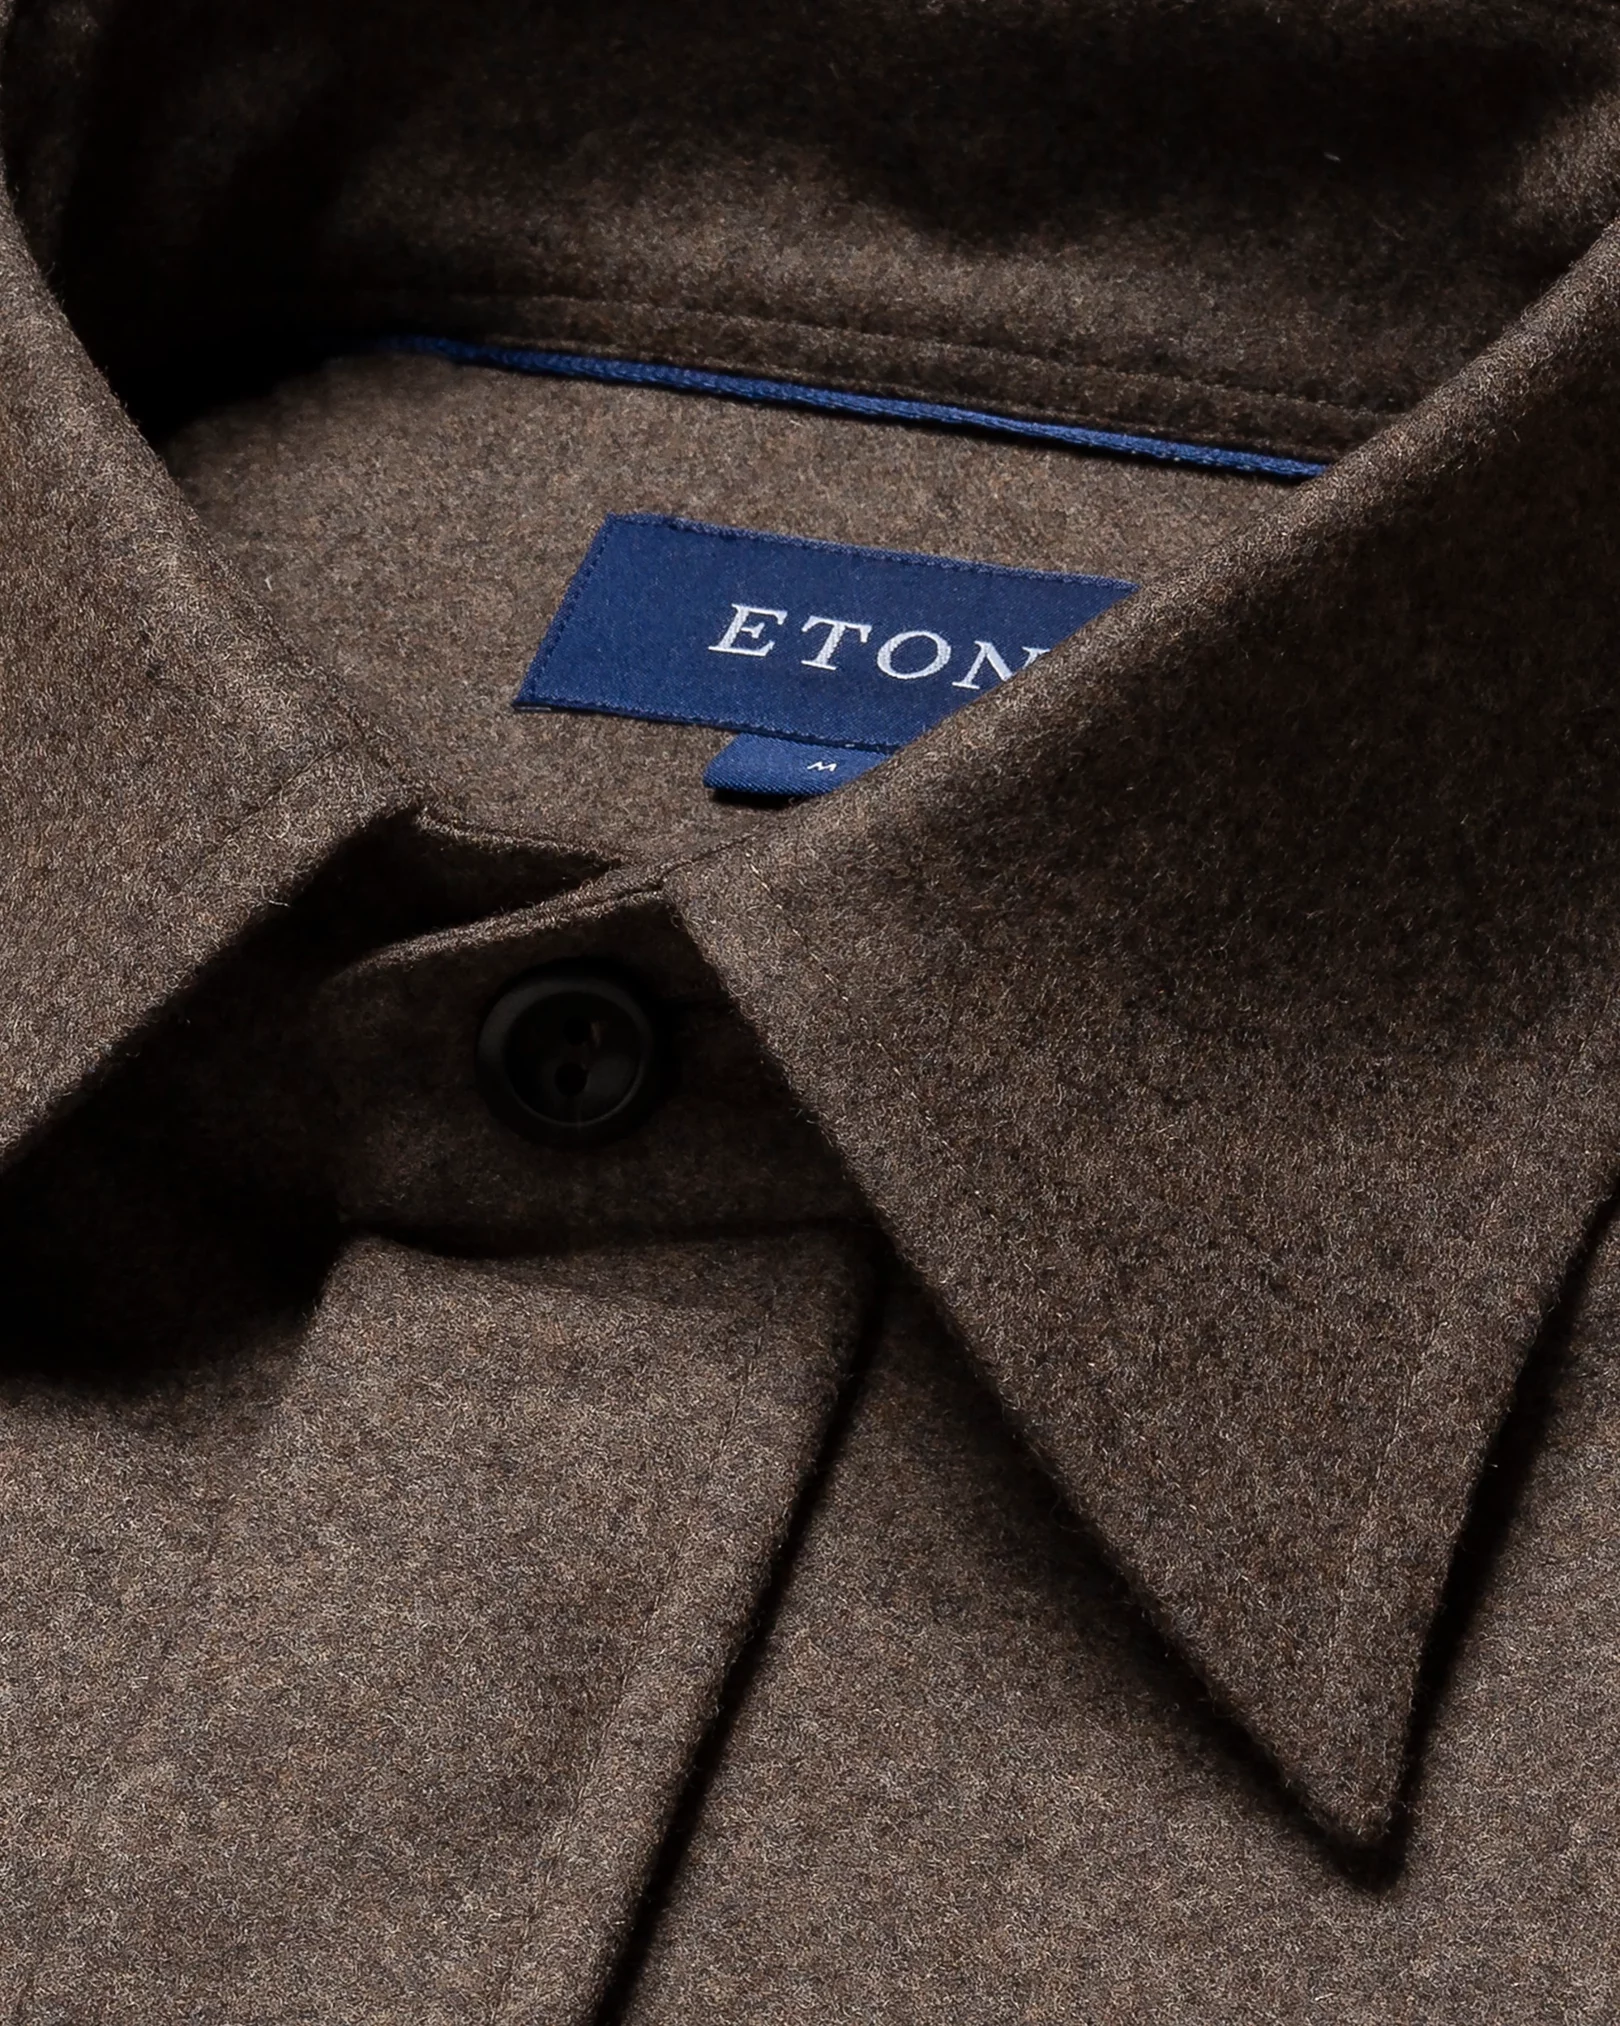 Eton - brown twill wool cashmere